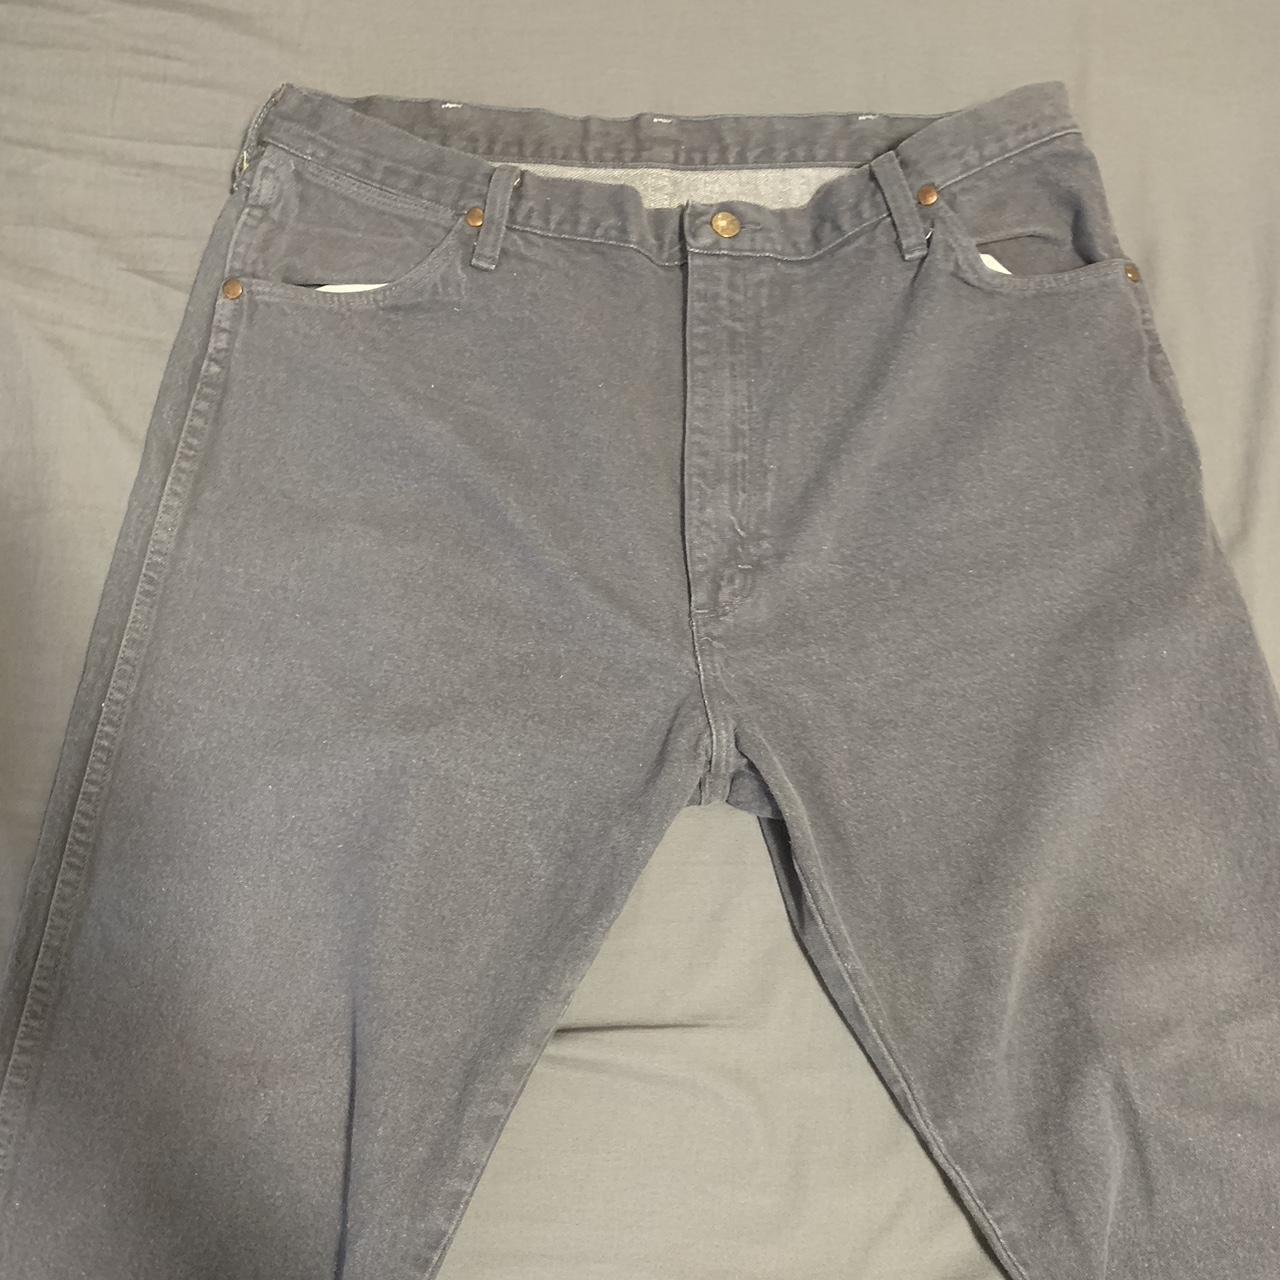 Vintage lavender wrangler jeans. Size 40/32. Good... - Depop